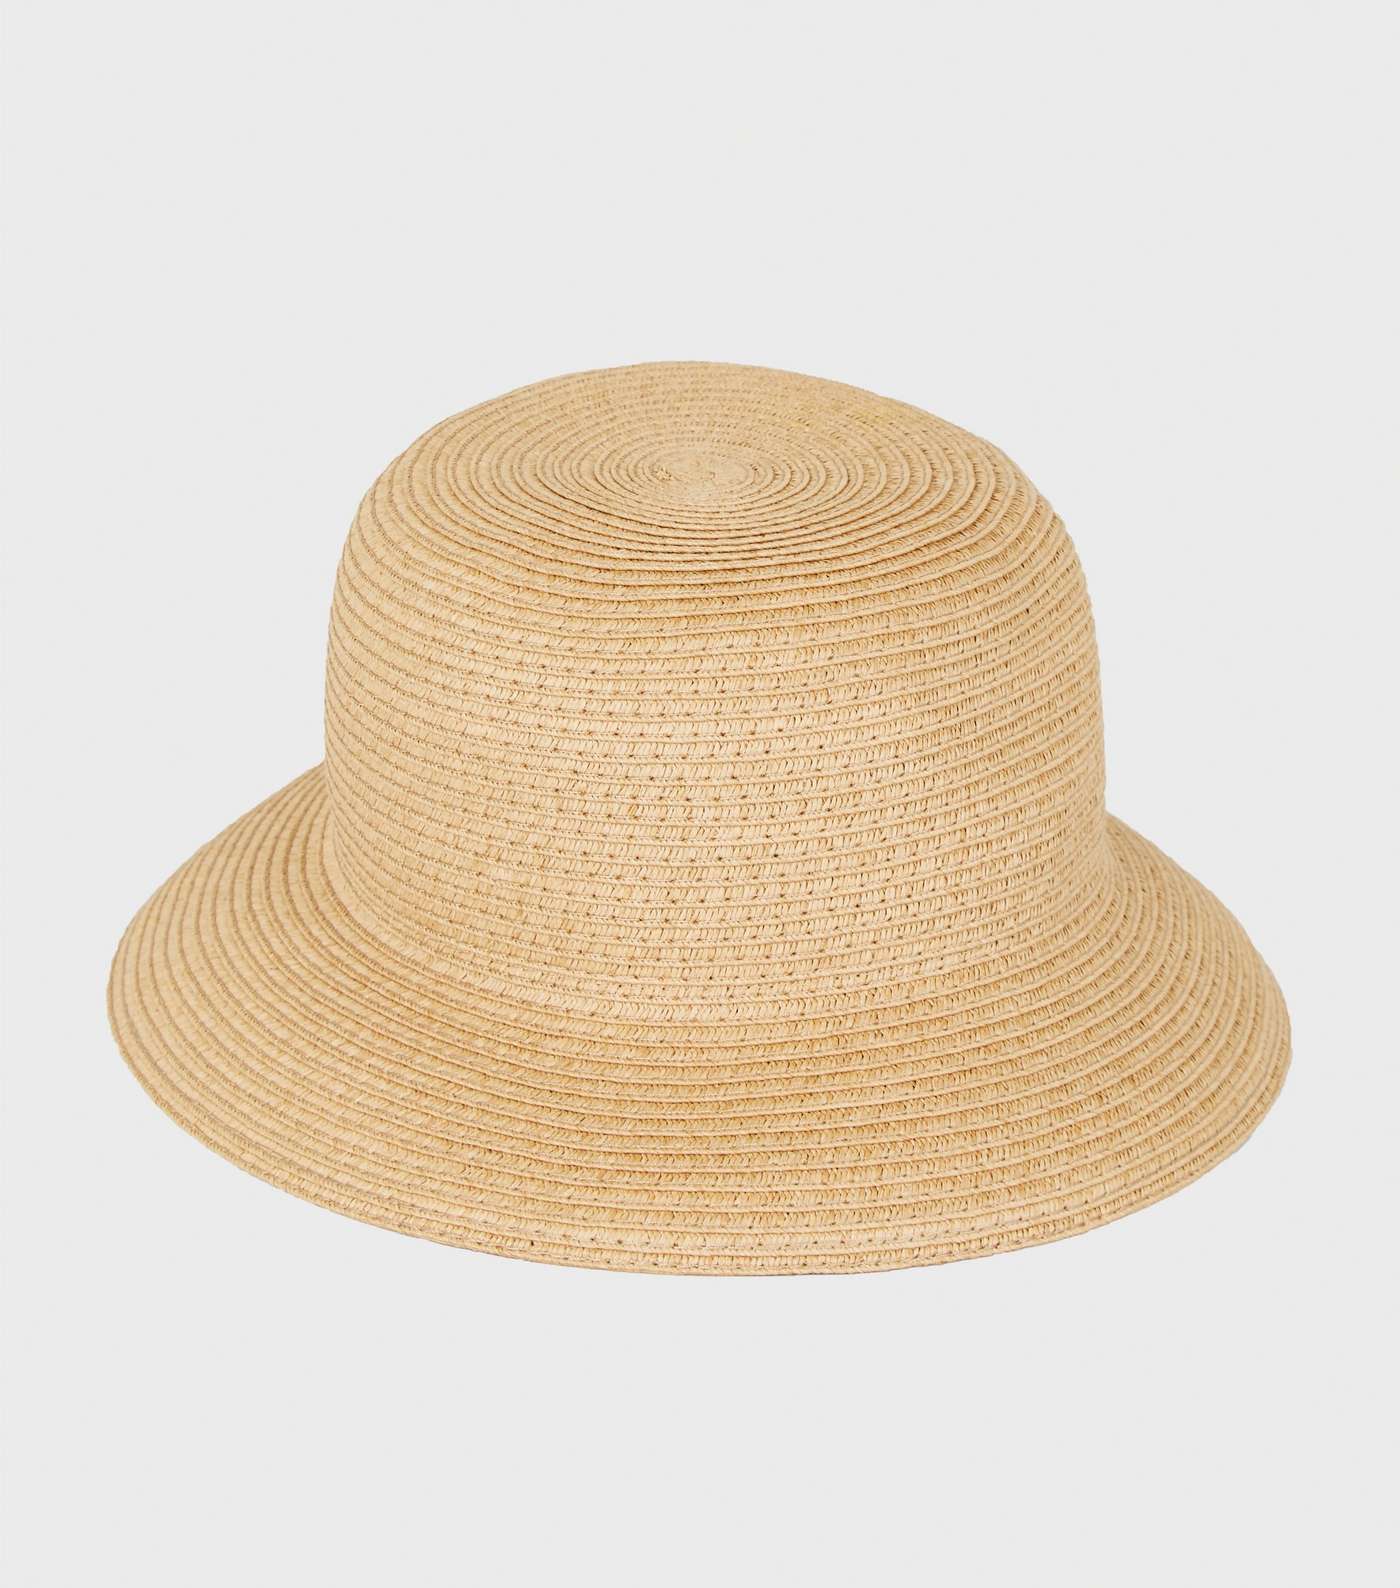 Tan Woven Straw Effect Bucket Hat